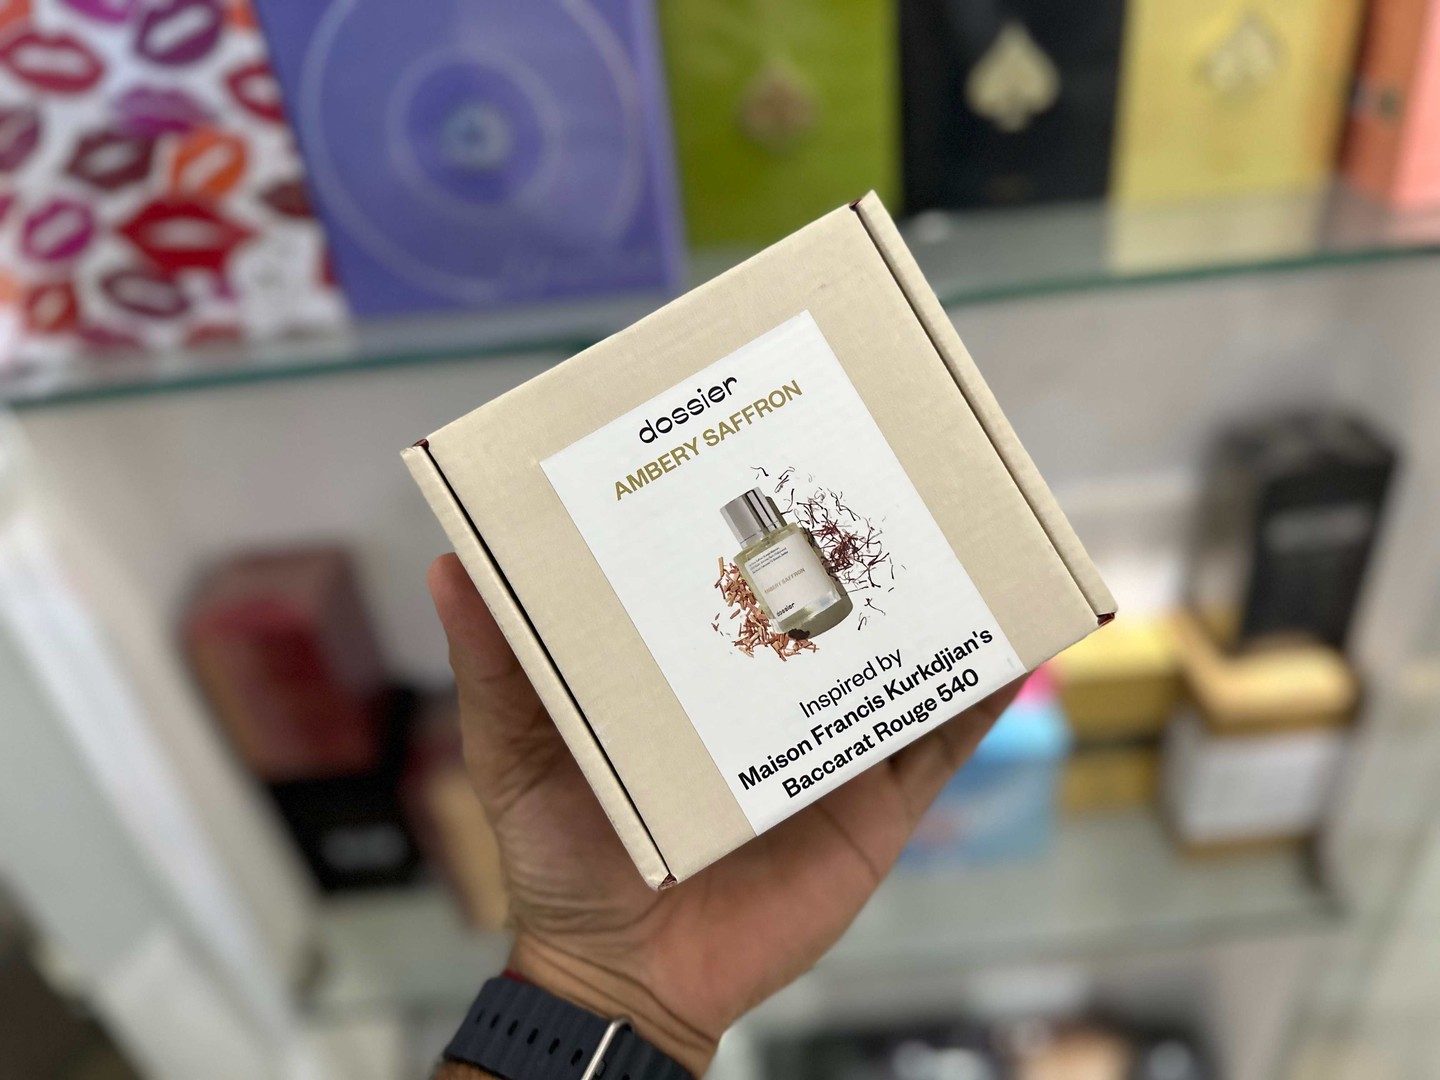 salud y belleza - Vendo Perfumes Dossier Ambery Saffron inspirado Bacarat Rouge Nuevo $ 4,300 NEG